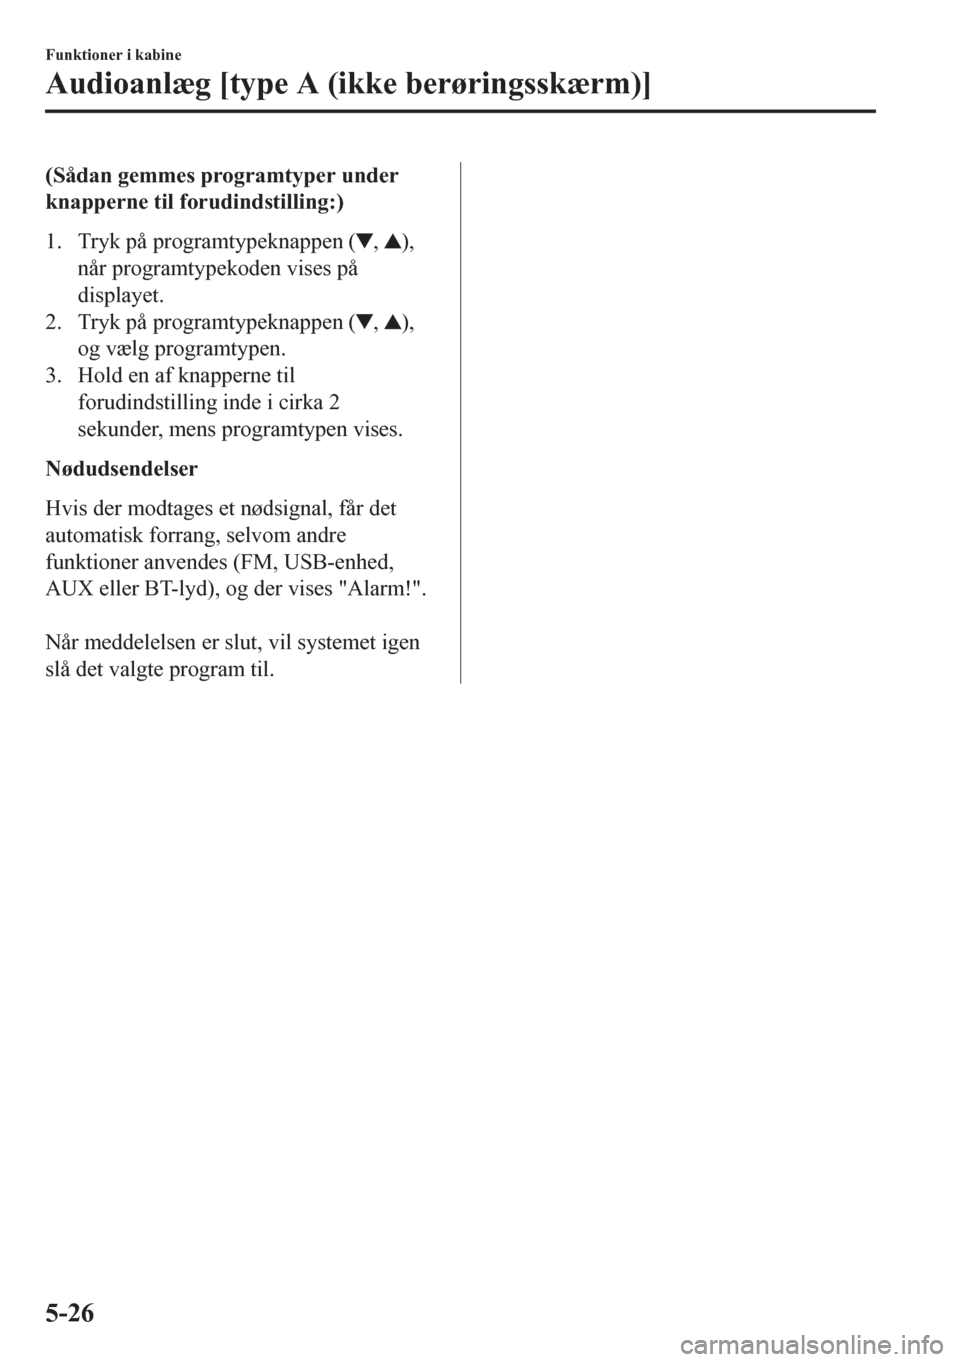 MAZDA MODEL CX-5 2018  Instruktionsbog (in Danish) (Sådan gemmes programtyper under
knapperne til forudindstilling:)
1. Tryk på programtypeknappen (
, ),
når programtypekoden vises på
displayet.
2. Tryk på programtypeknappen (
, ),
og vælg progr